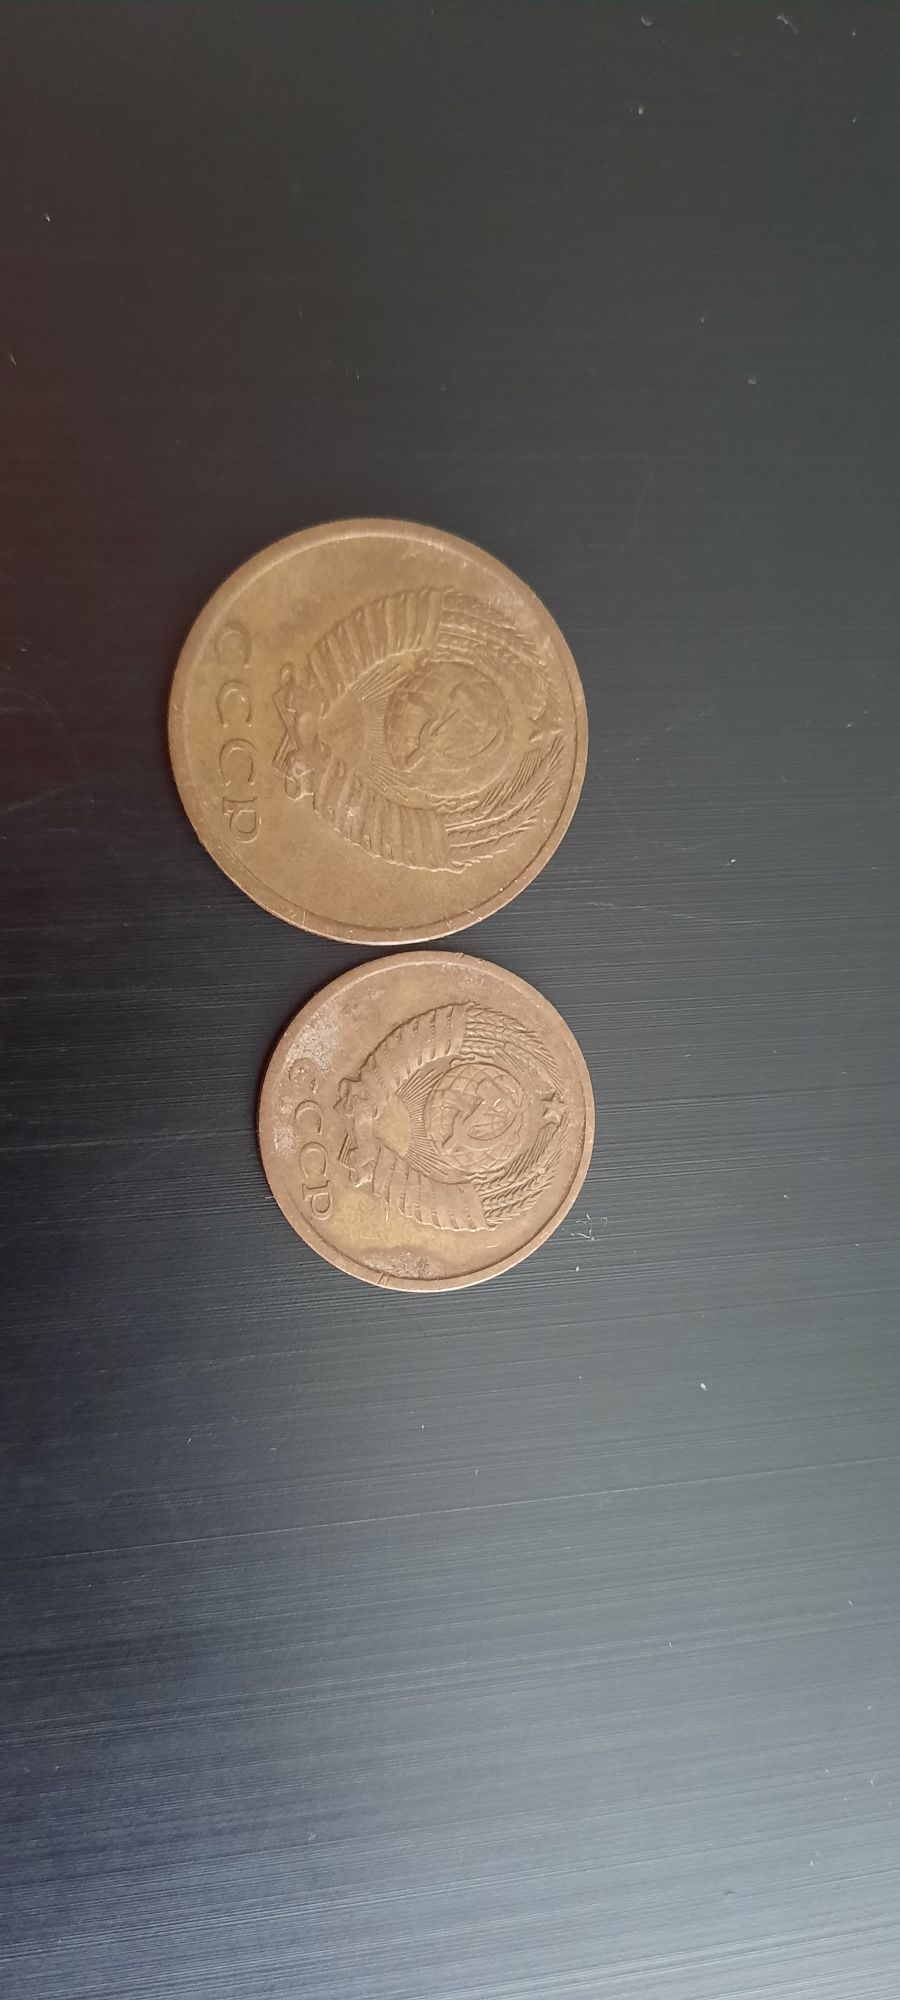 Monede rusești 2 kopeek 3 kopeek 15 kopeek copeici 1980 1974